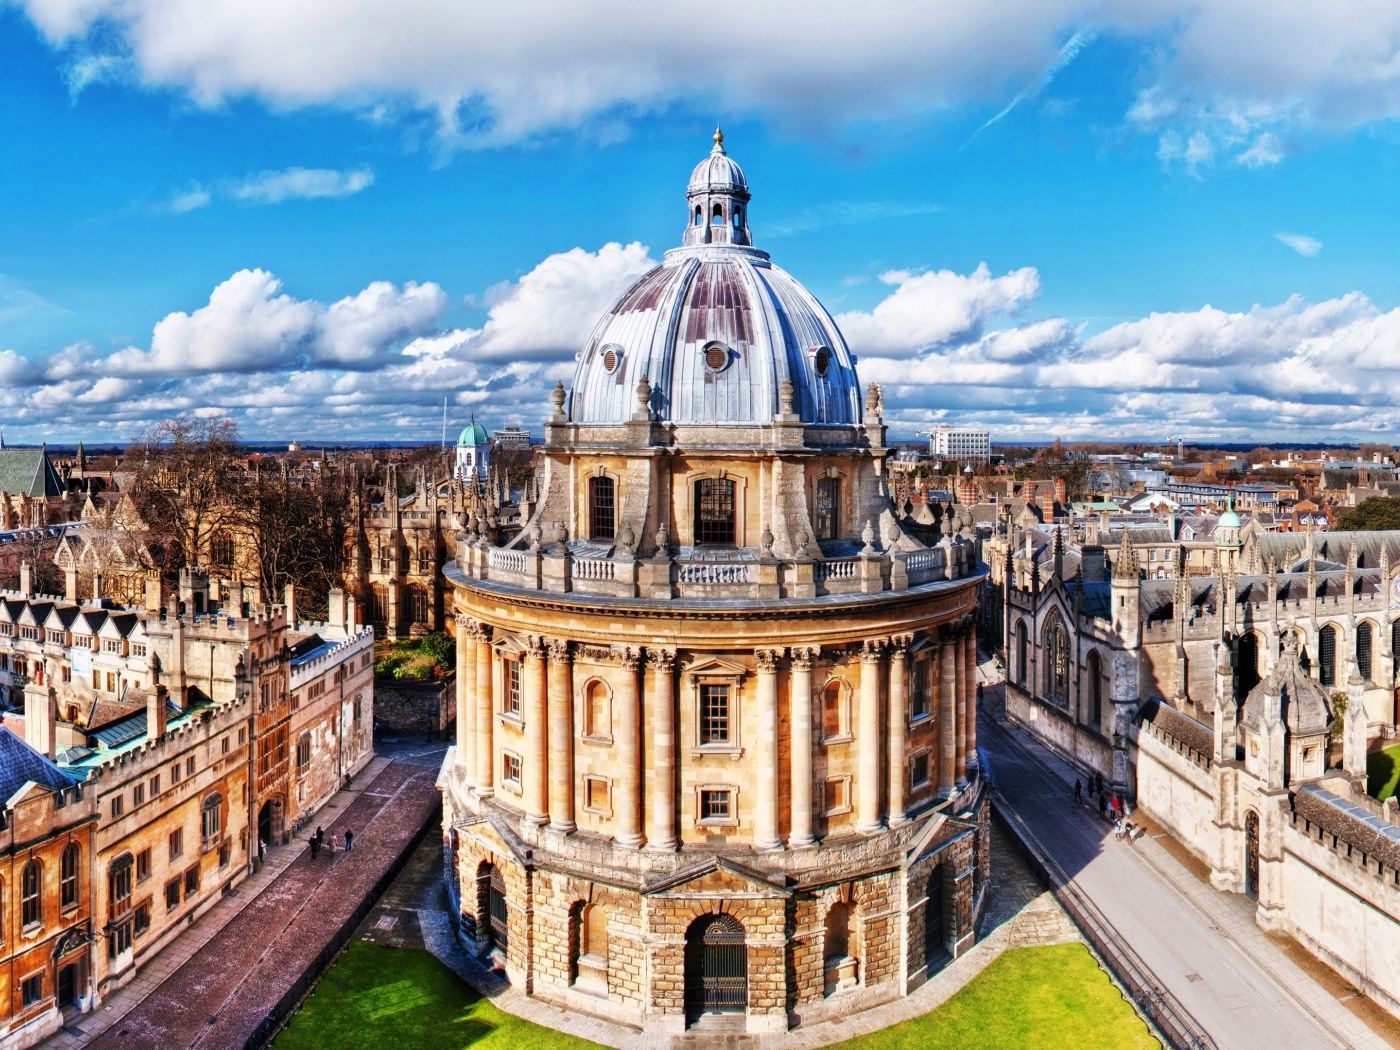 Здание Оксфордского университета под голубым небом, Англия